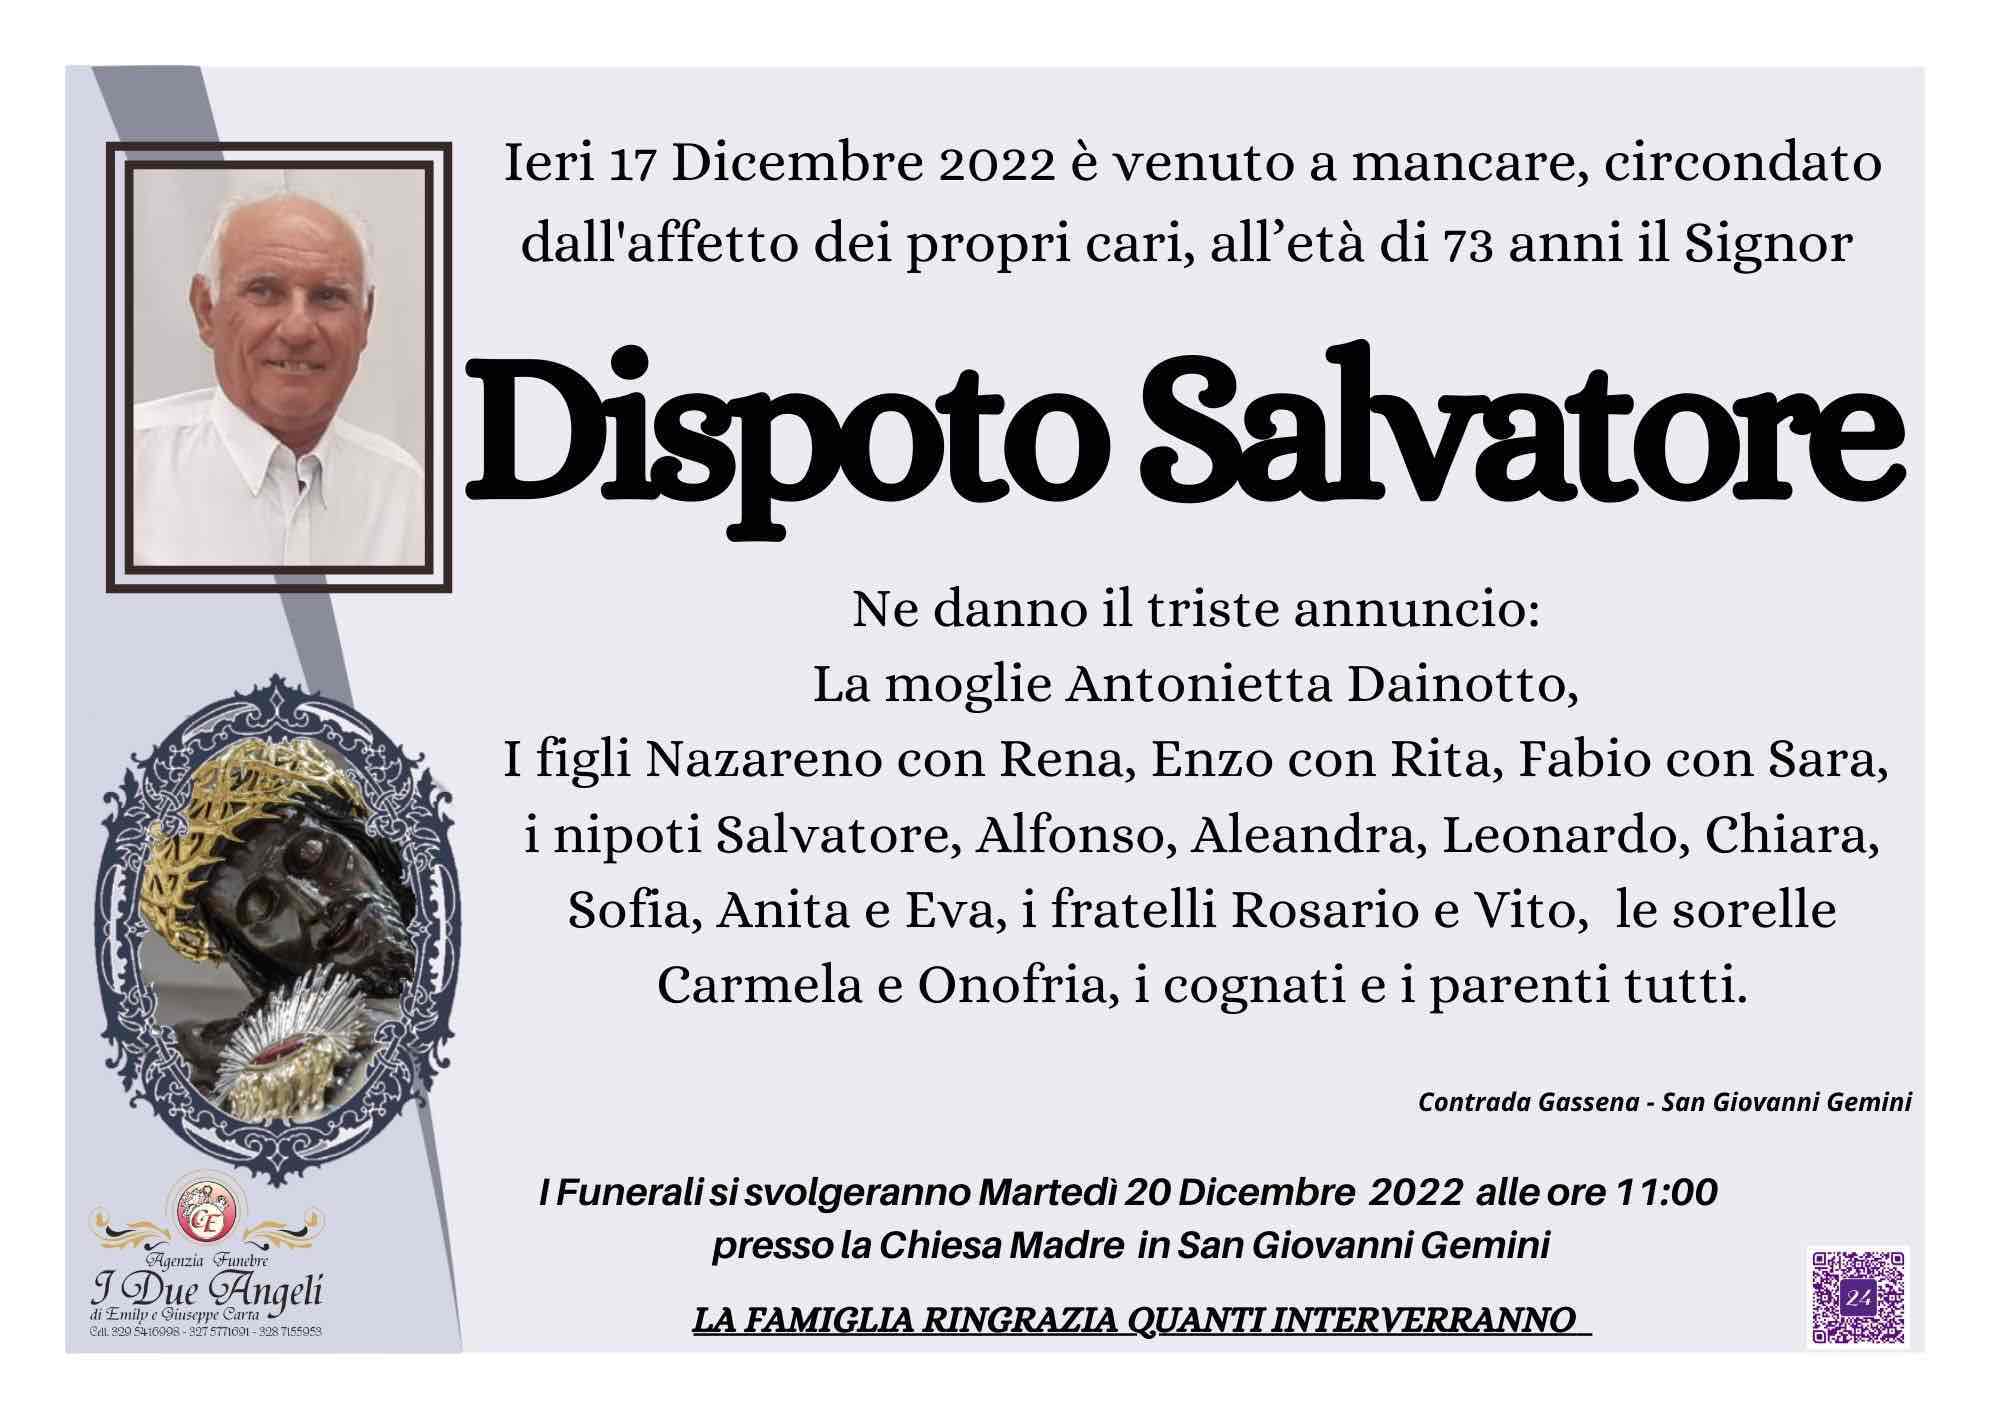 Salvatore Dispoto